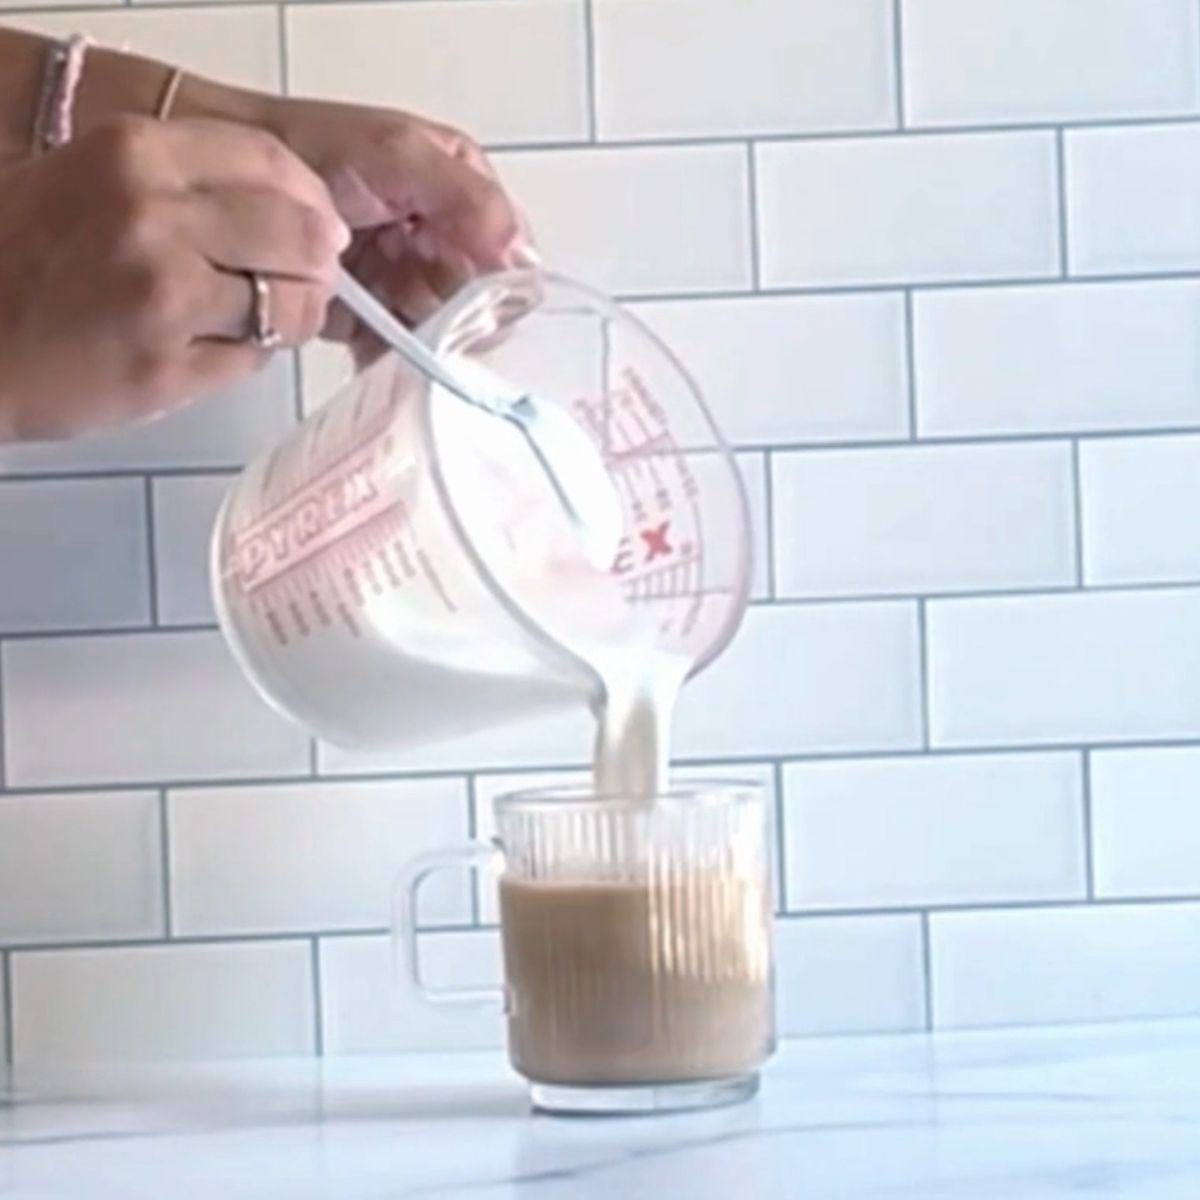 Adding warm milk to a latte.